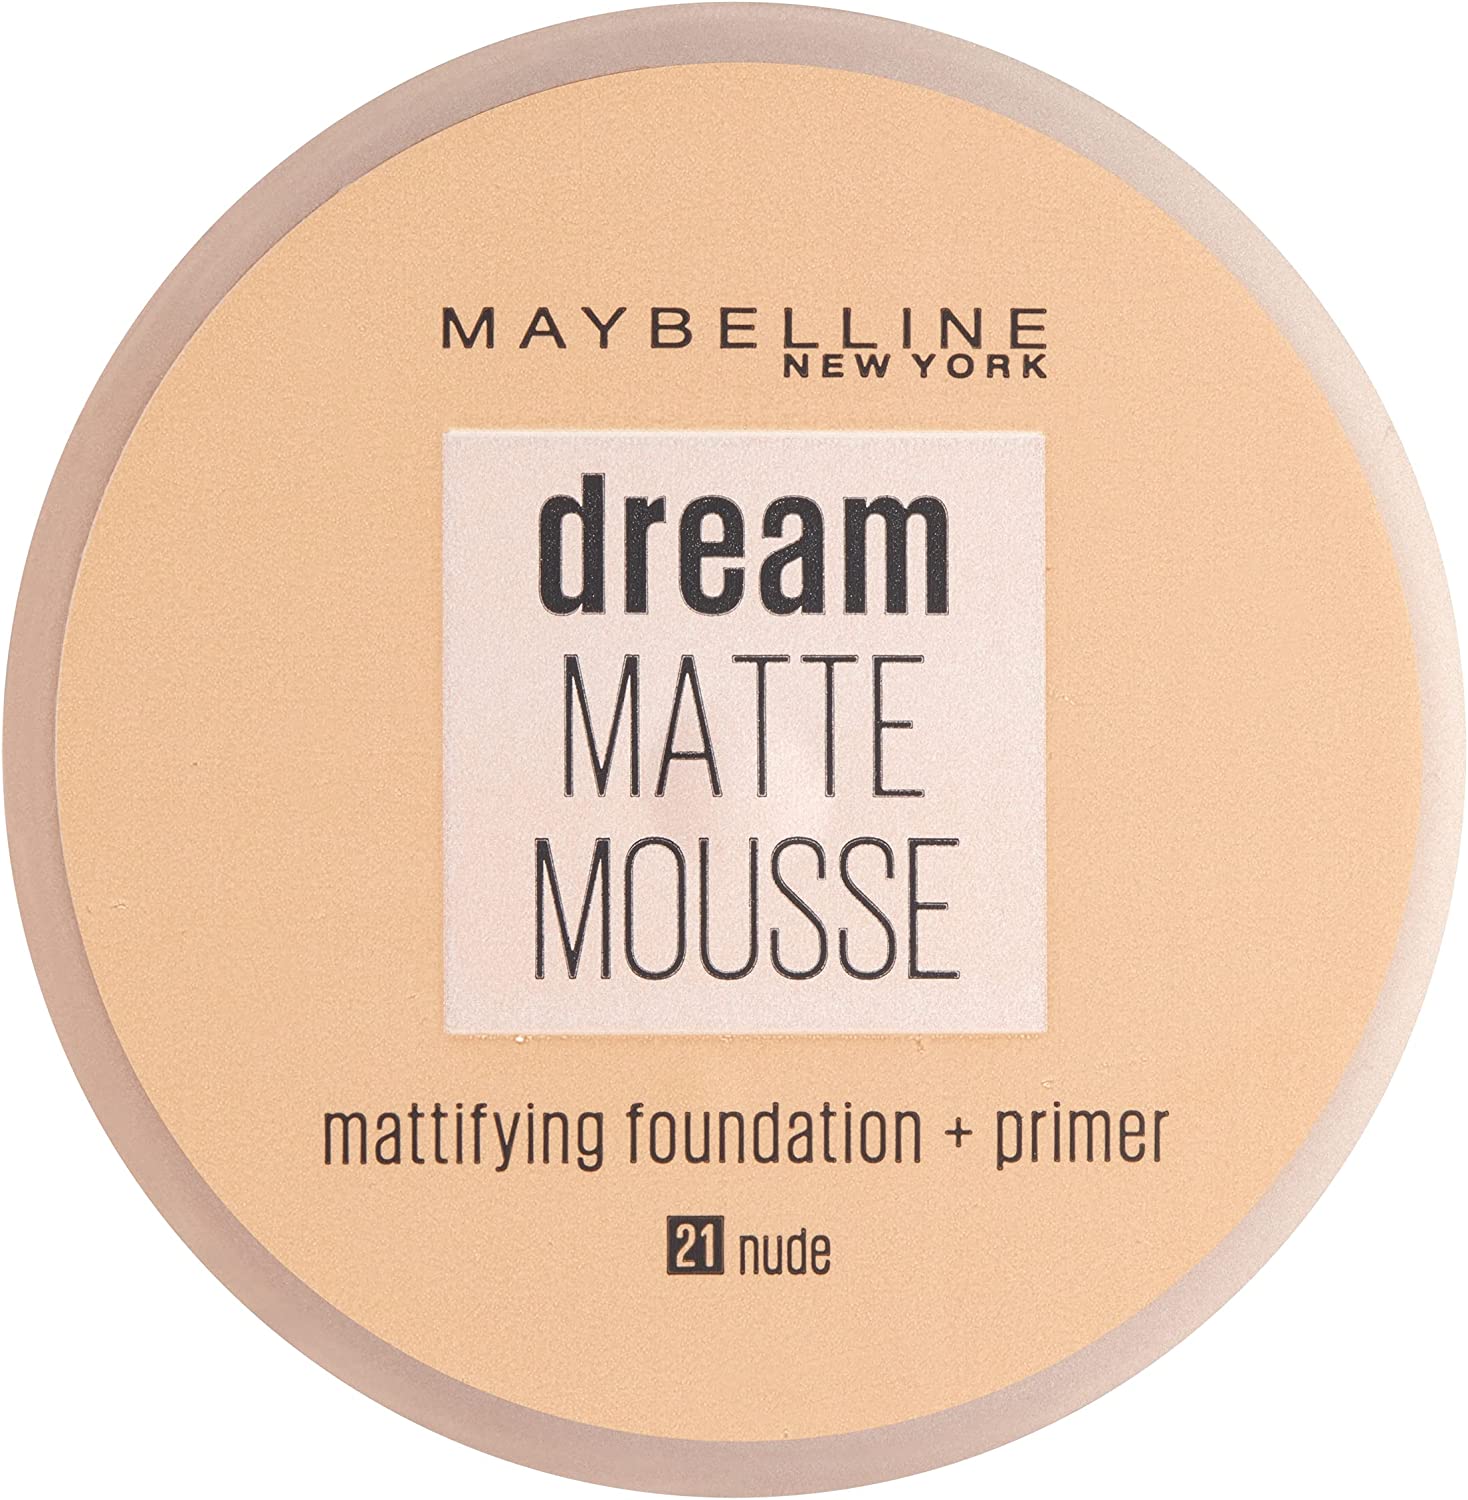 Maybelline Dream Matte Mousse Make Up Foundation + Primer 21 Nude